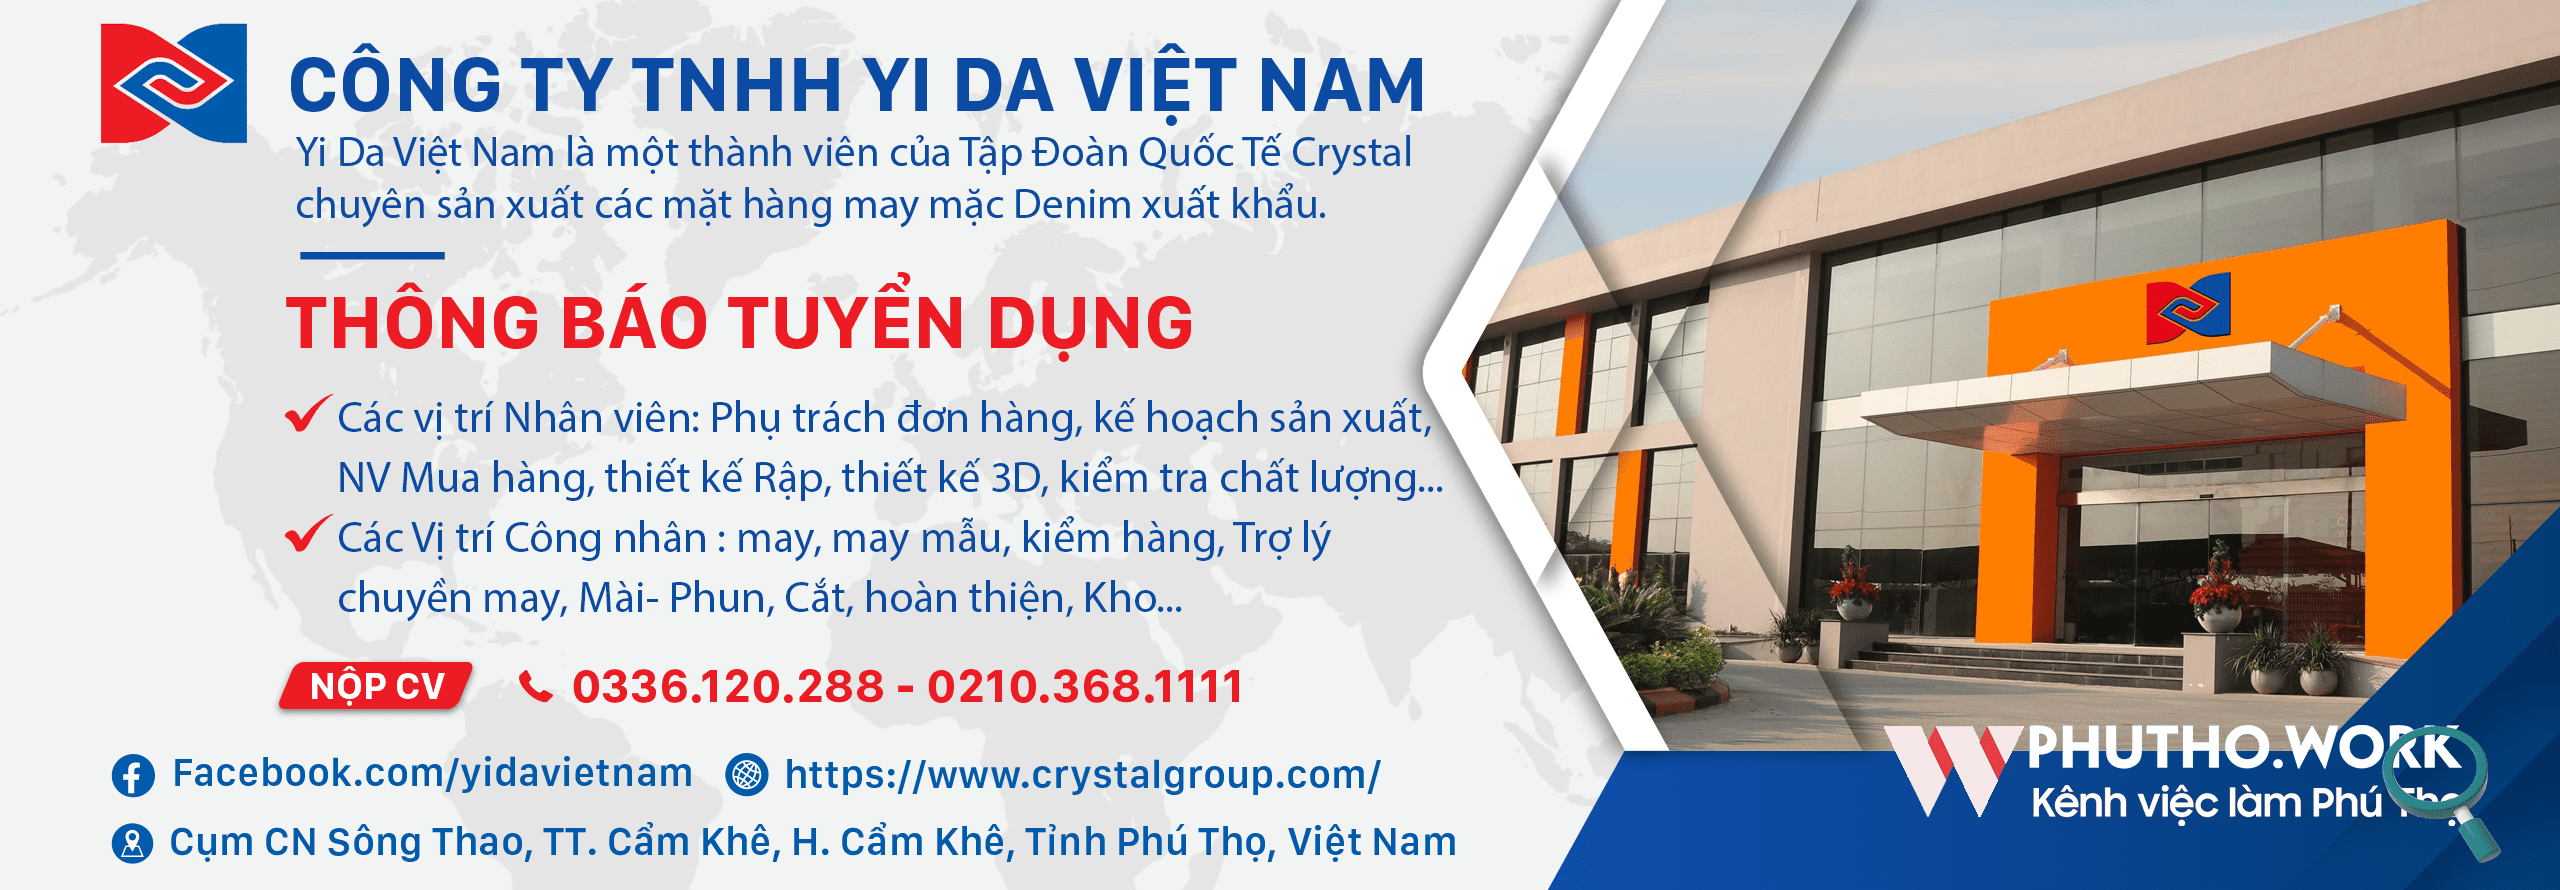 Cong Ty Tnhh Yi Da Viet Nam Thong Bao Tuyen Dung Nhieu Vi Tri Nhan Vien Va Cong Nhan 7